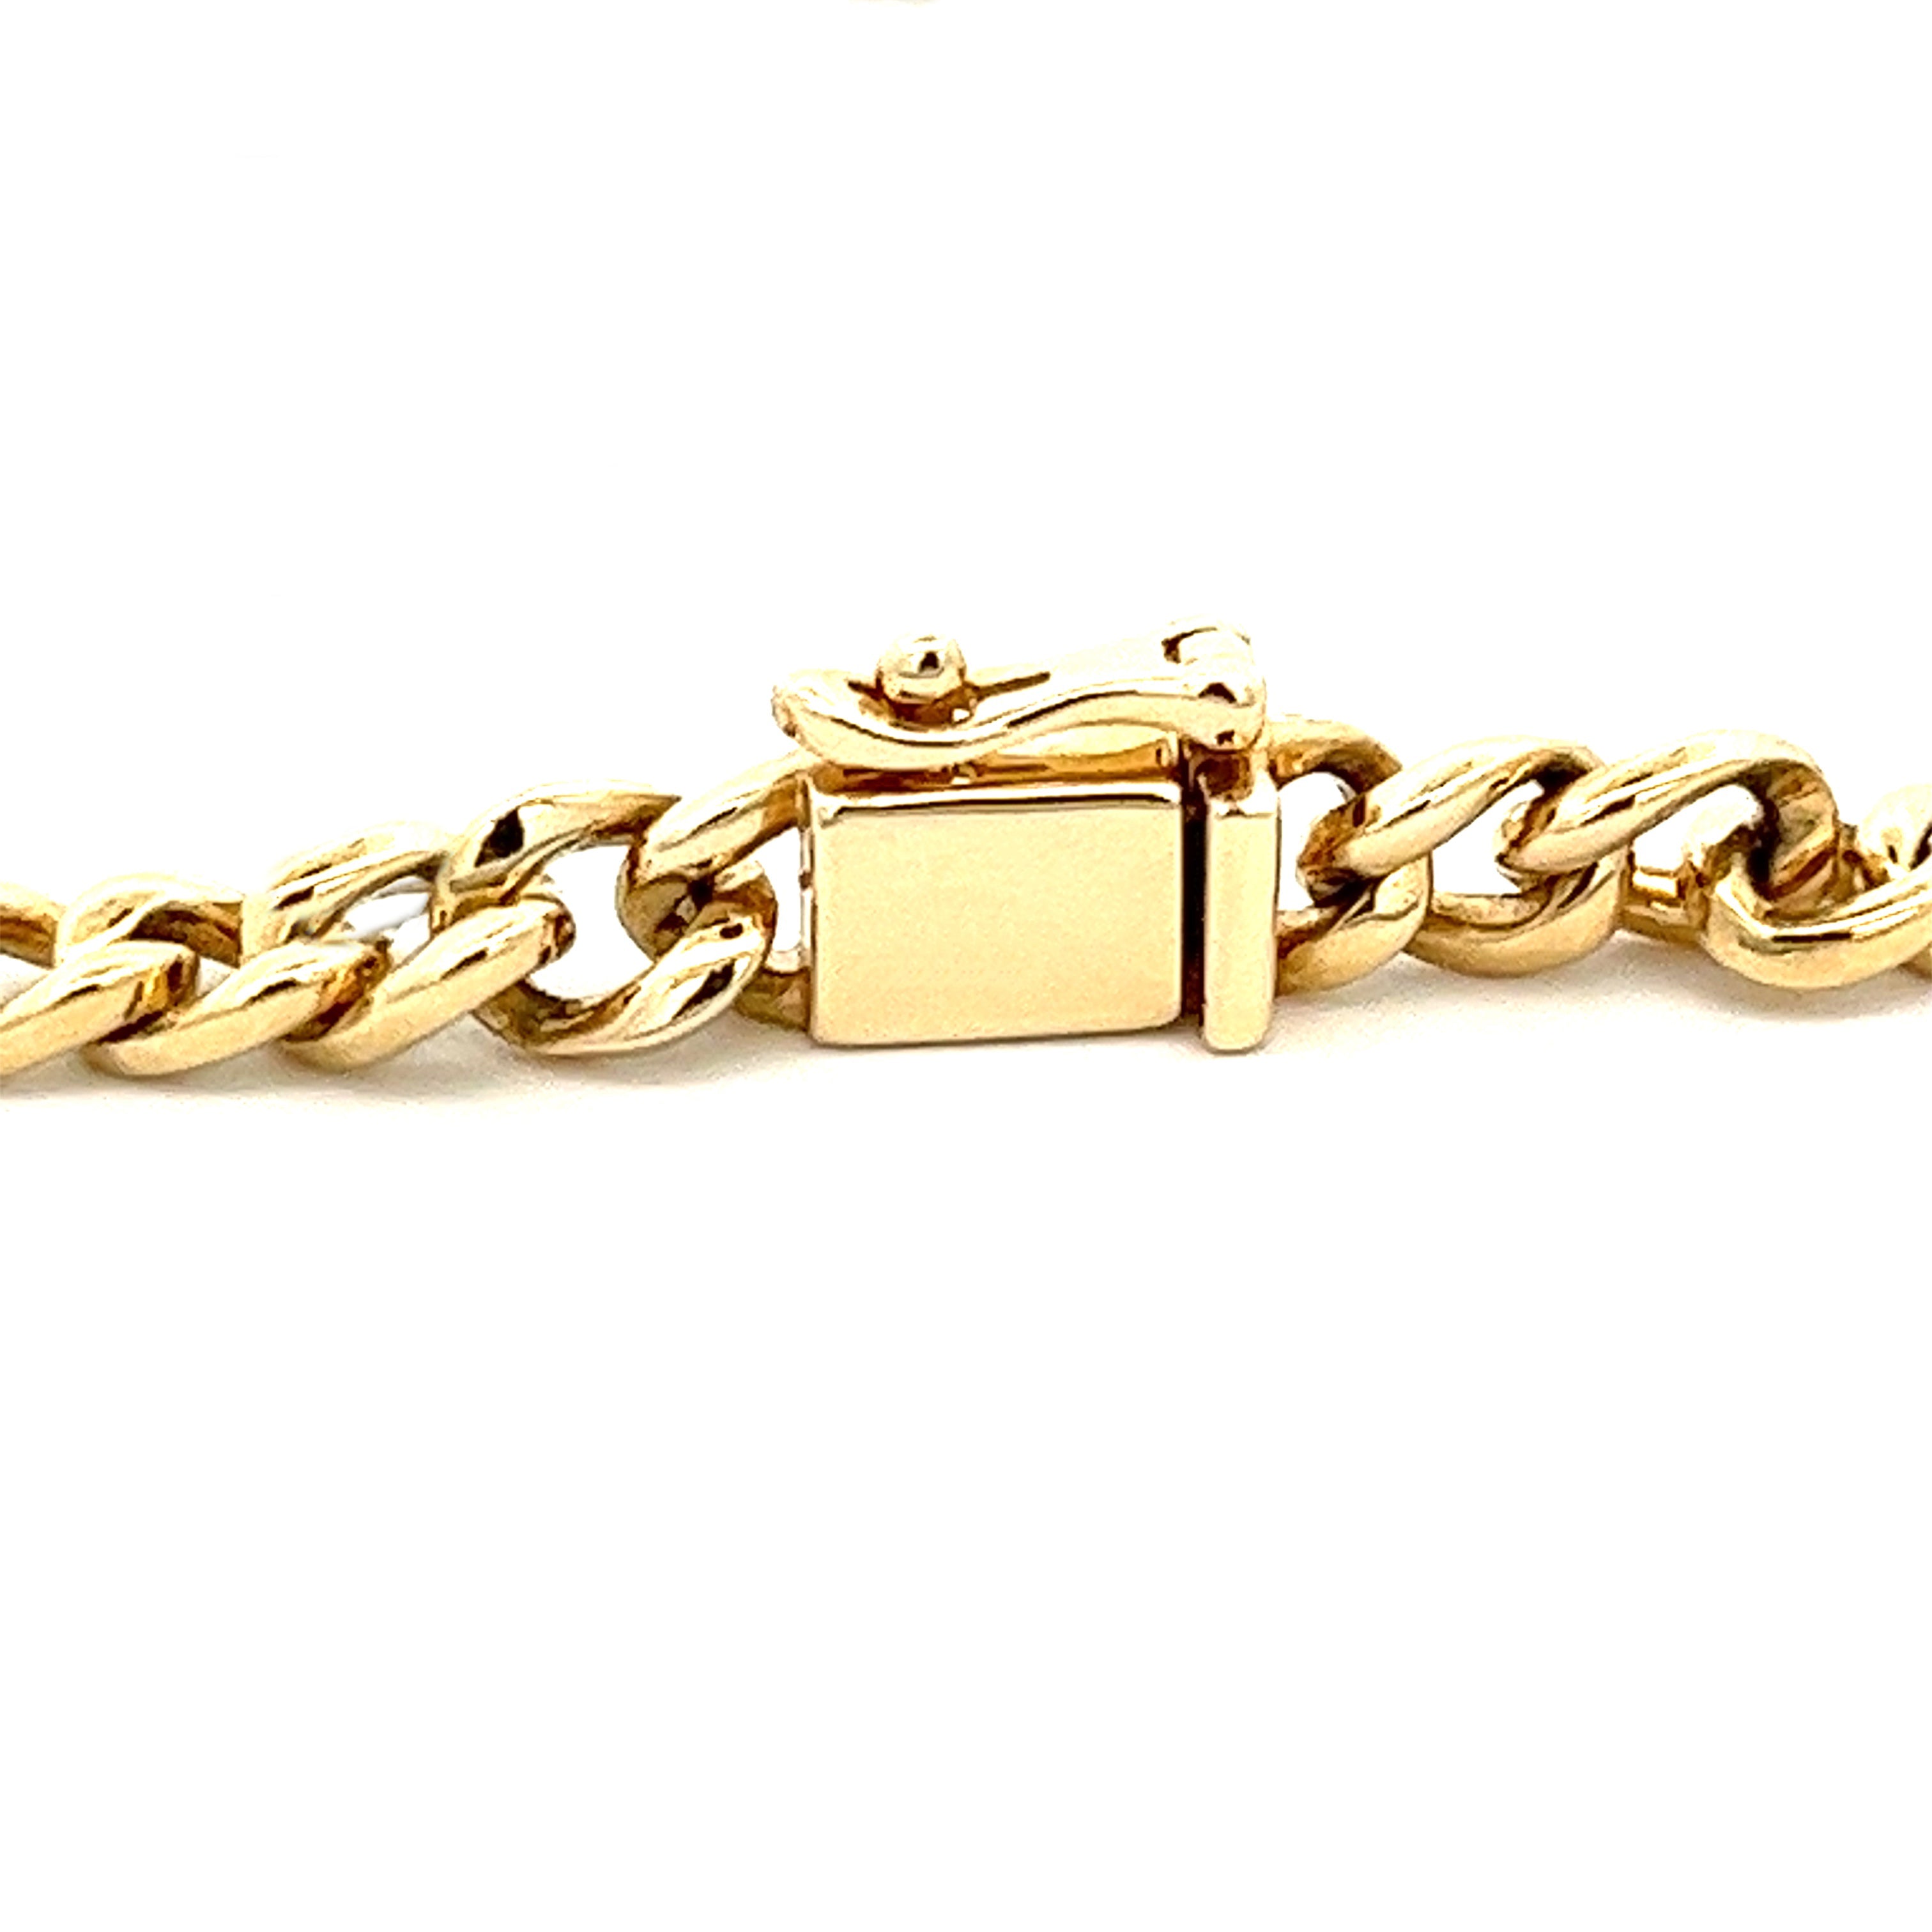 Chain Bracelet Cuban Link Bracelet Pave Cuban Link Curb 